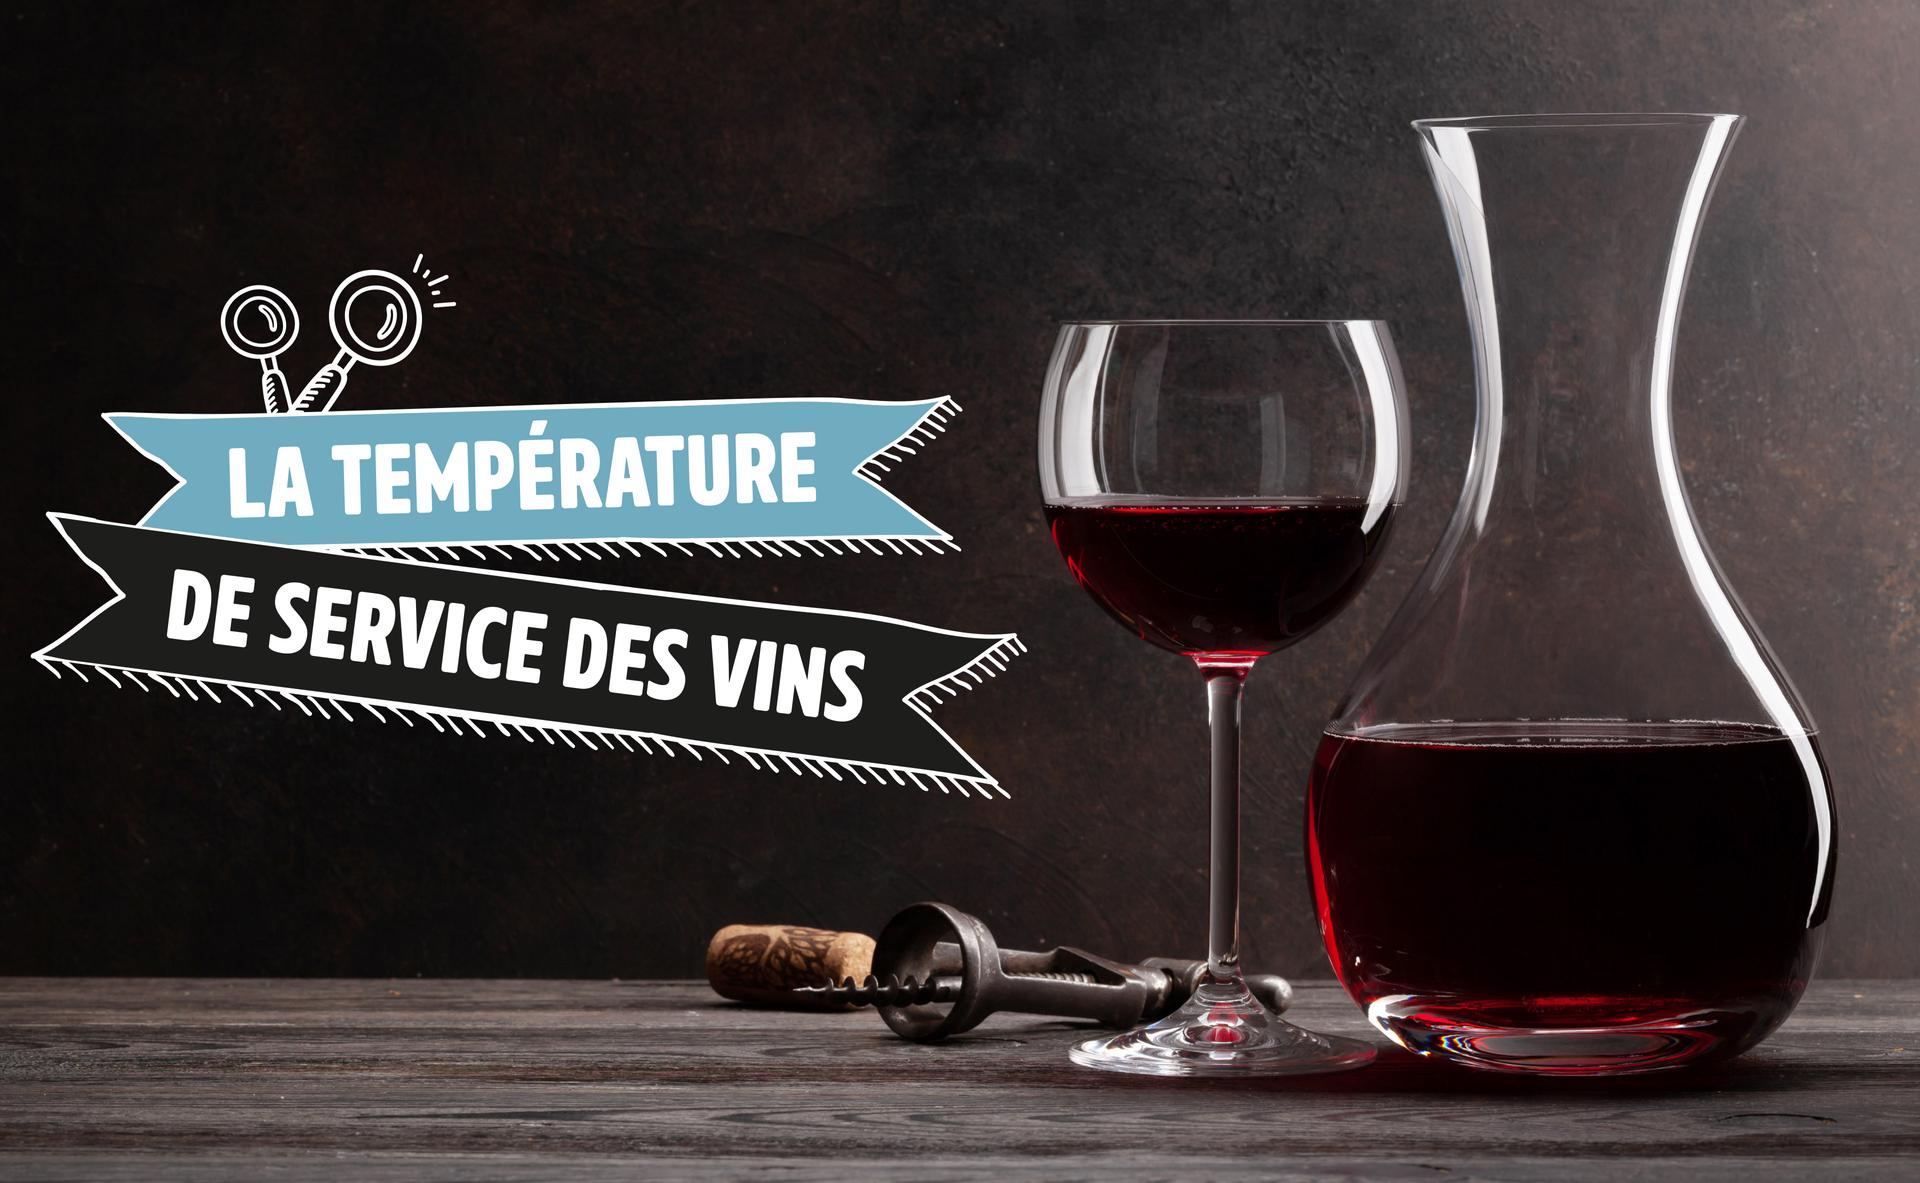 La température de service des vins